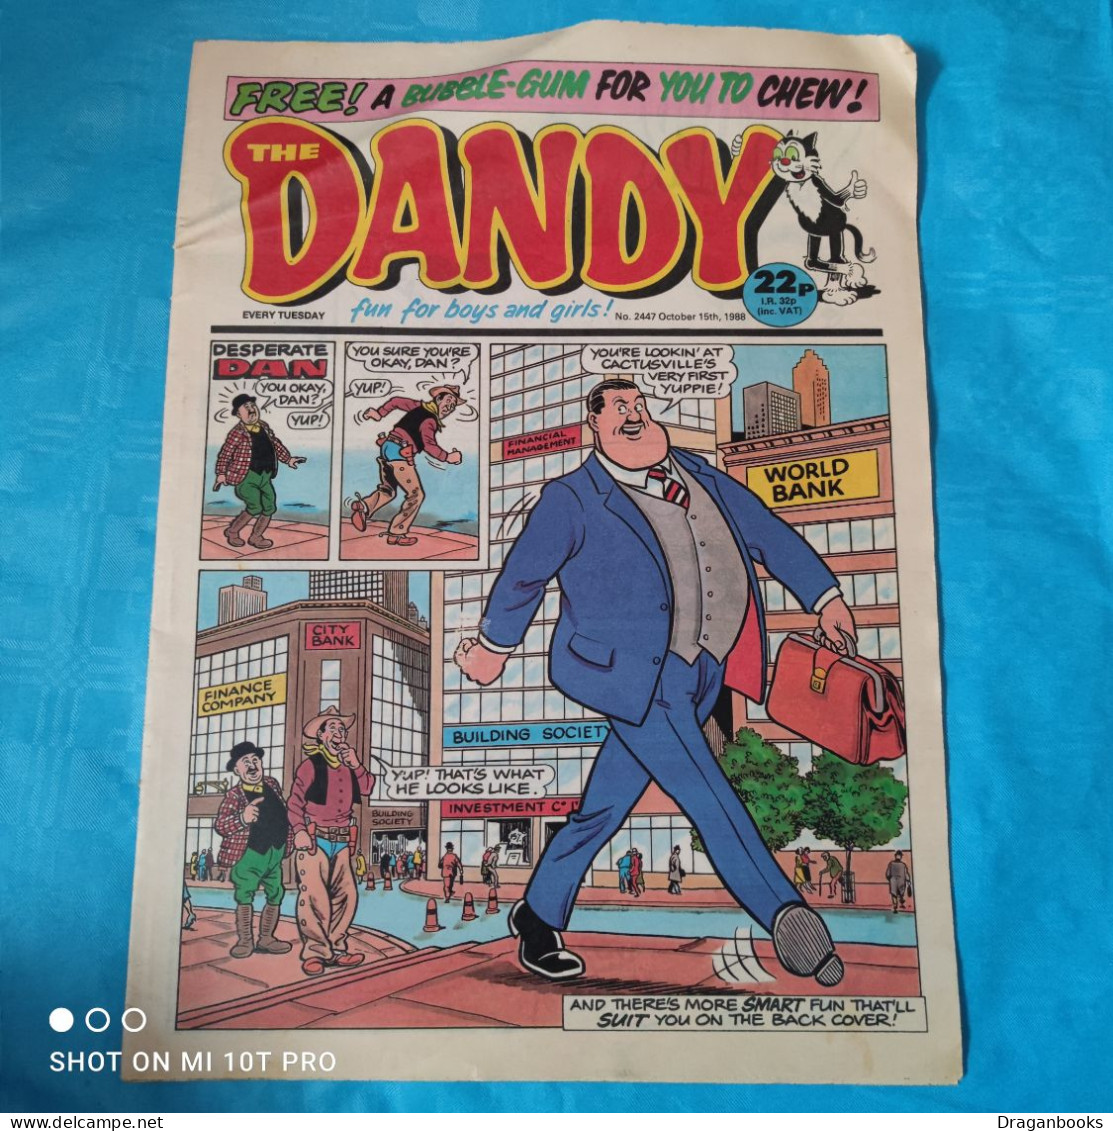 The Dandy No. 2447 - October 15th 1988 - Newspaper Comics